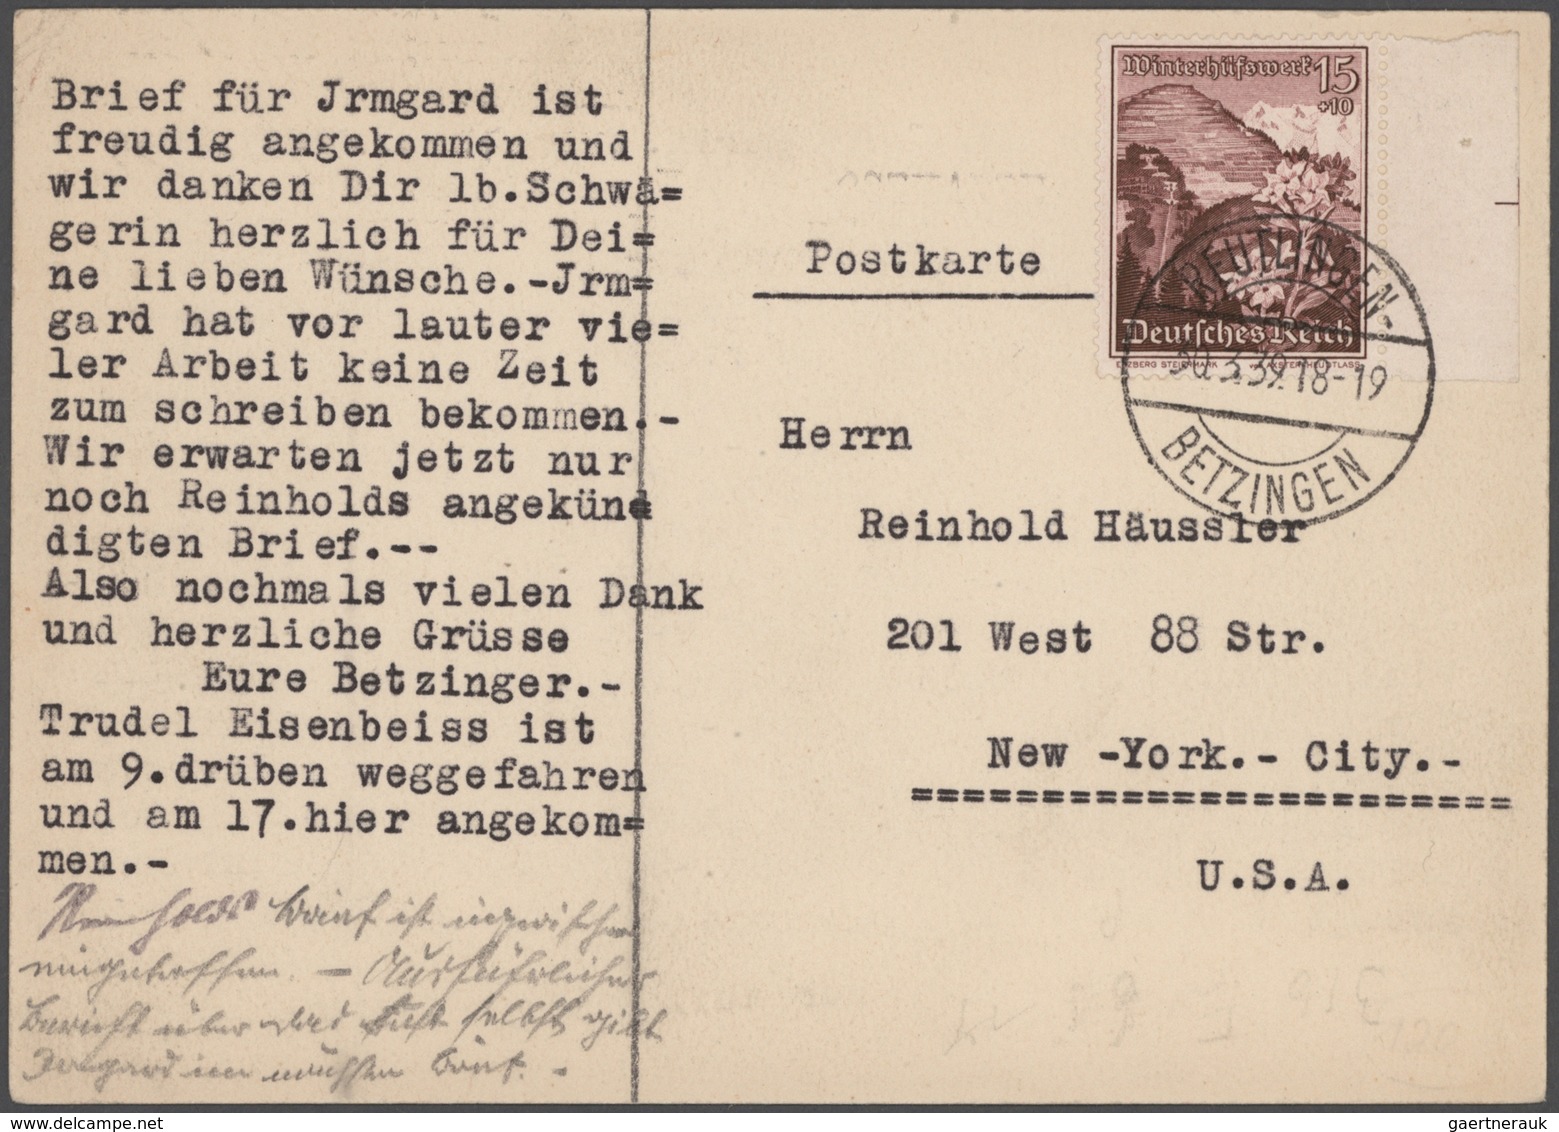 Deutsches Reich - 3. Reich: 1934/1945, Sammlung von ca. 450 Briefen und Karten, dabei etliche besser